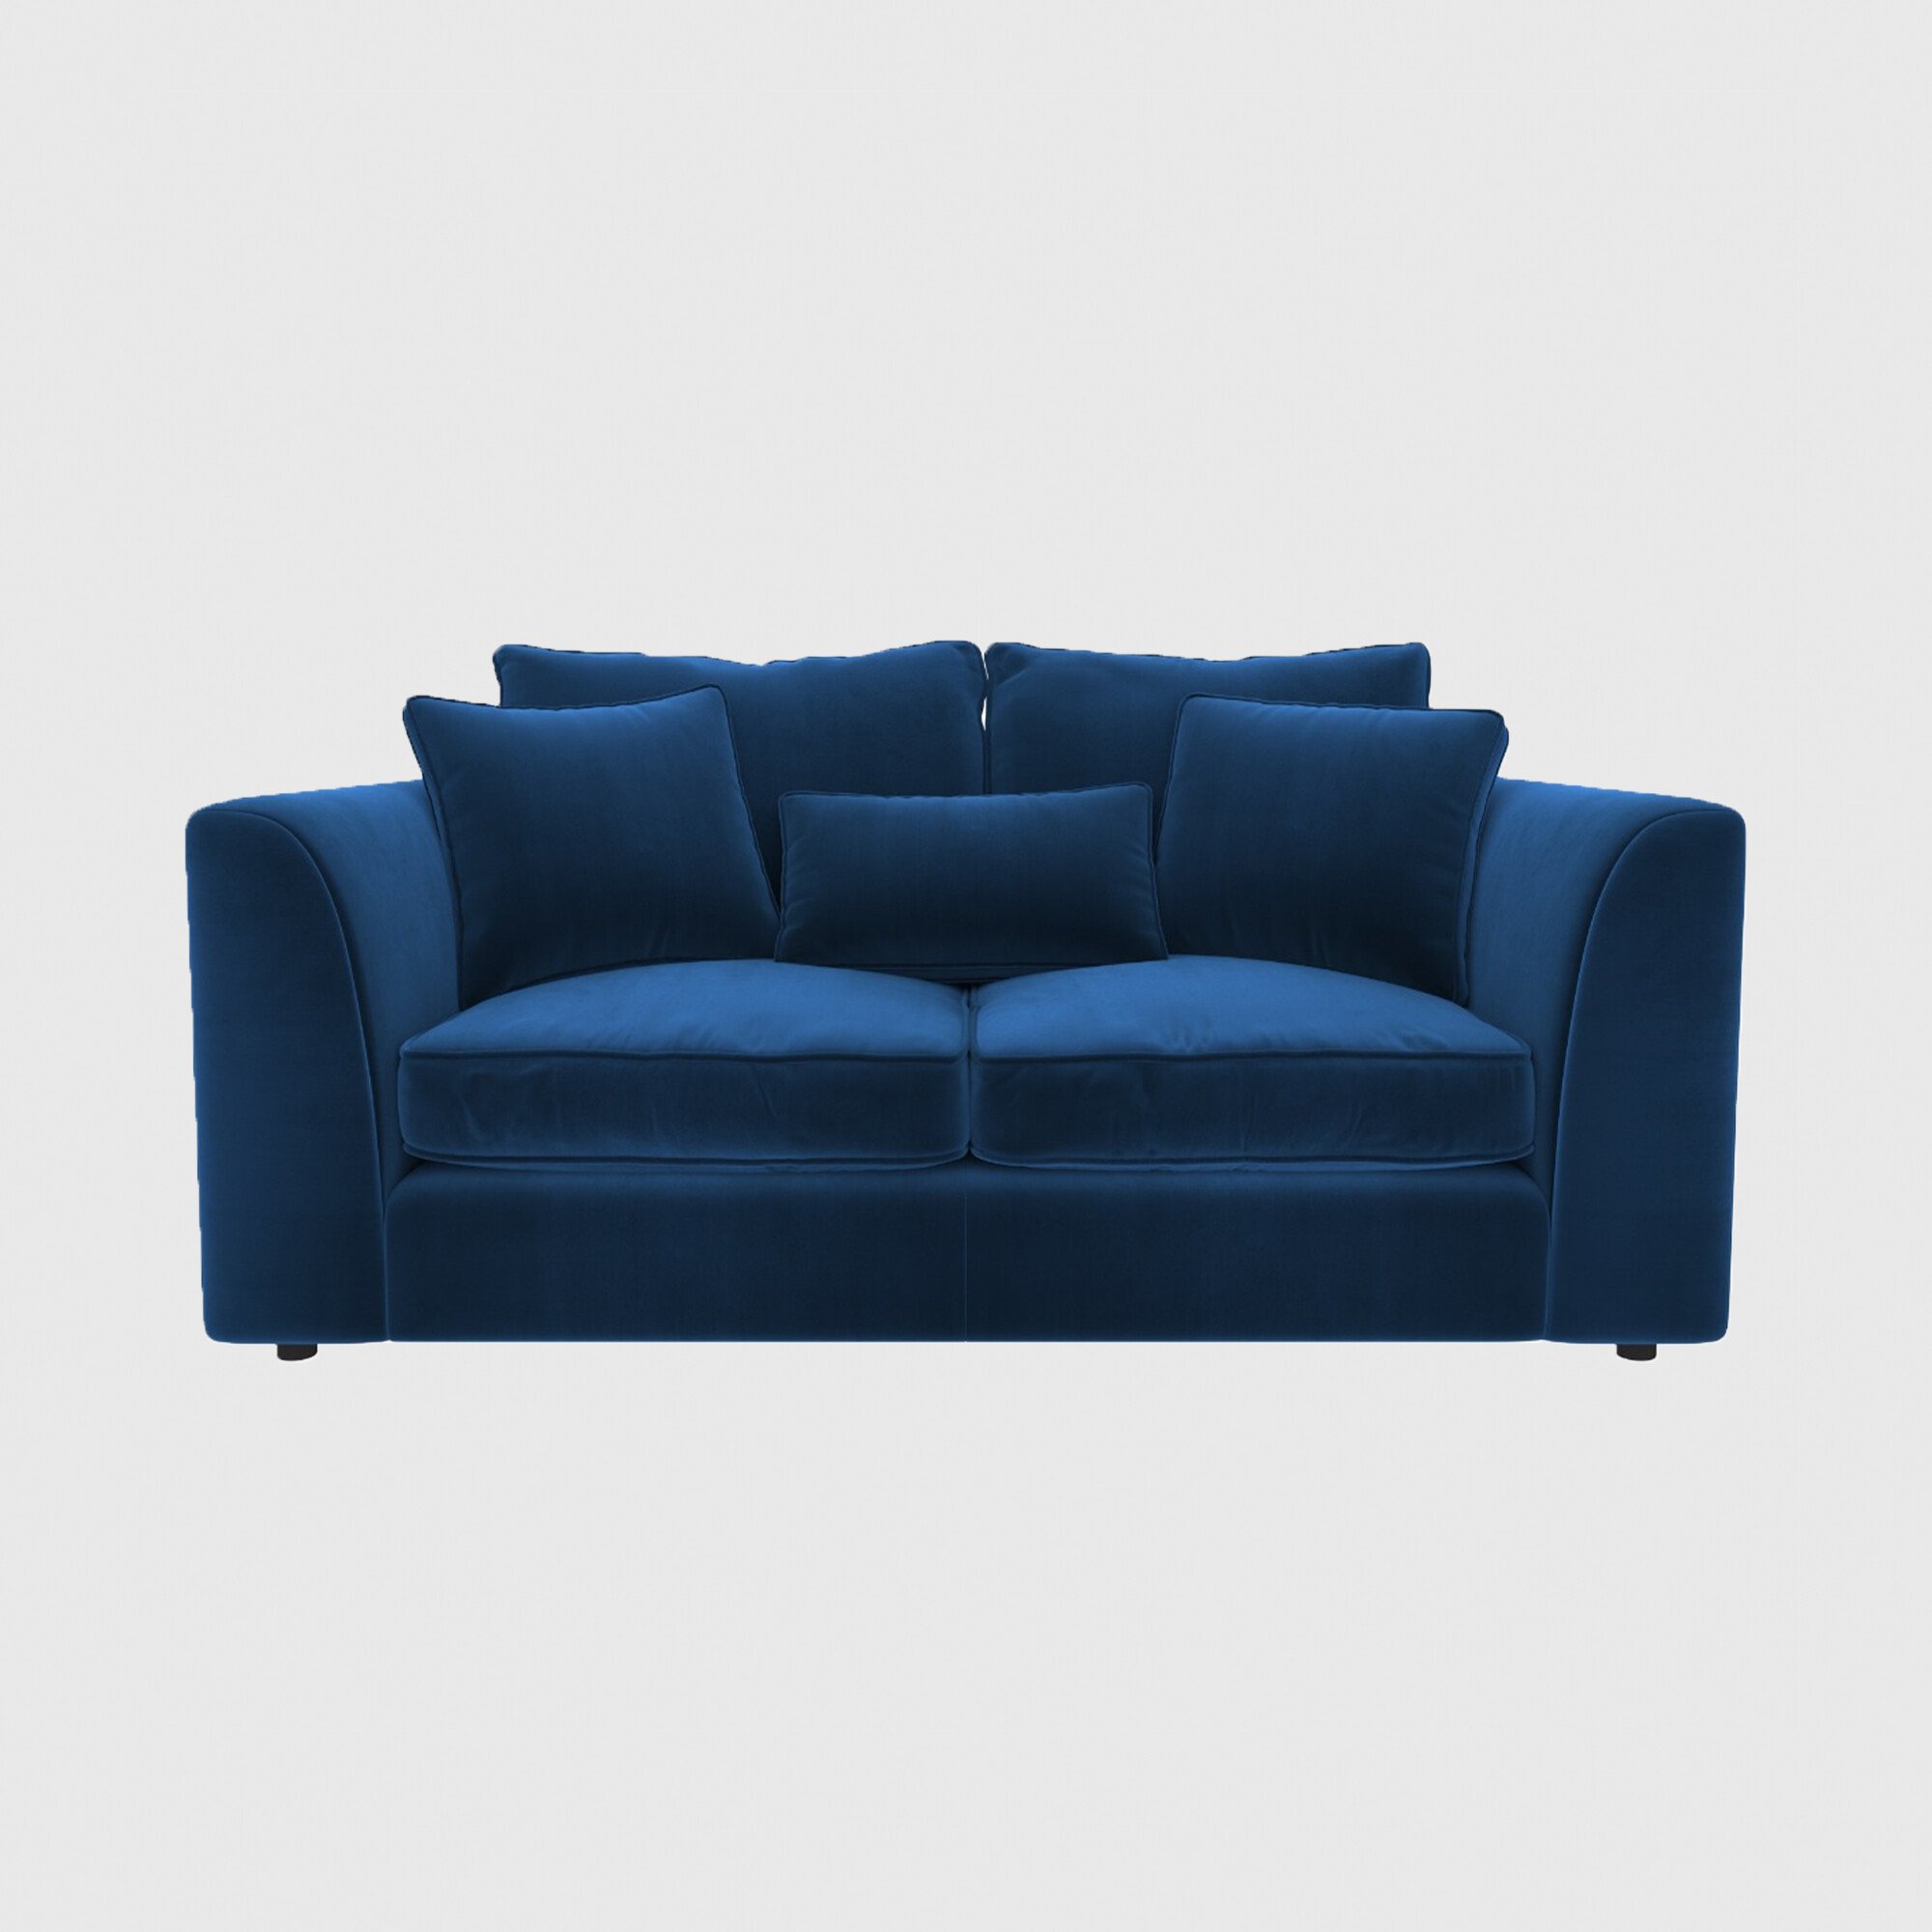 Harrington Small Sofa, Blue Fabric | Barker & Stonehouse